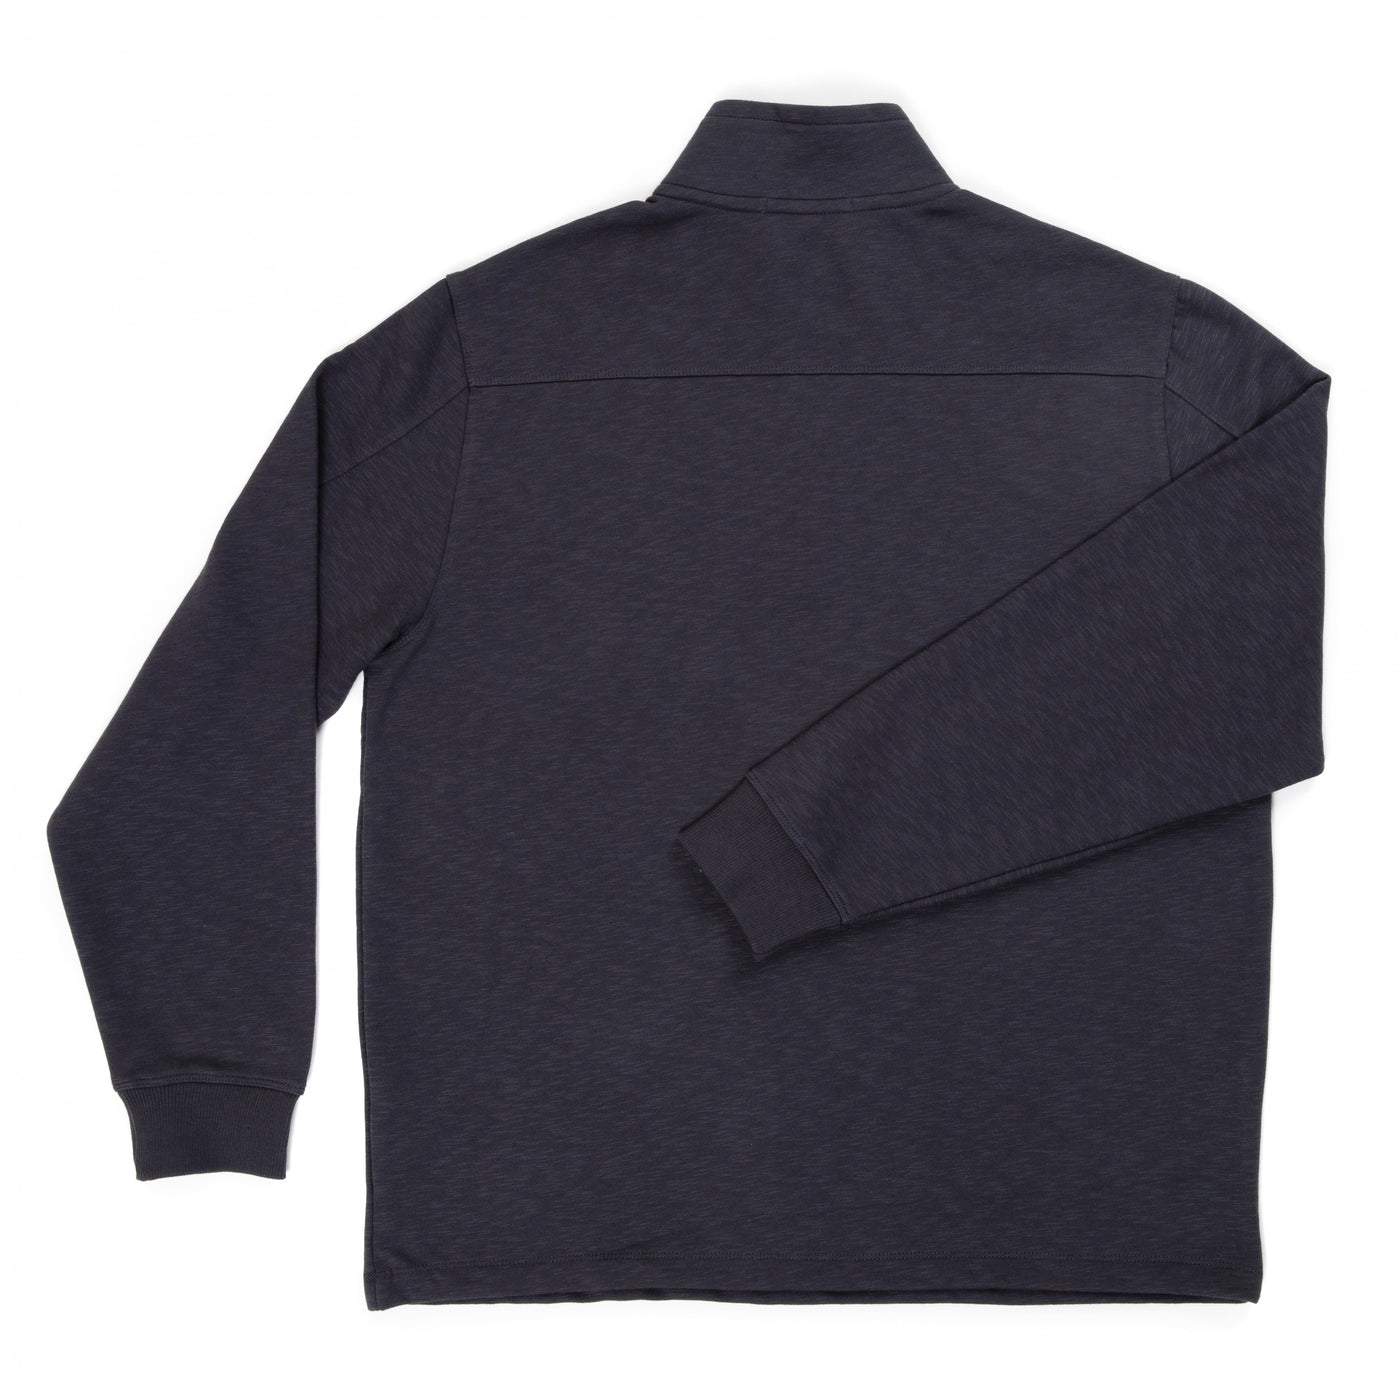 Spaceport America Port Authority ¼ Zip Pullover Sweatshirt/Sweater in Dark Grey